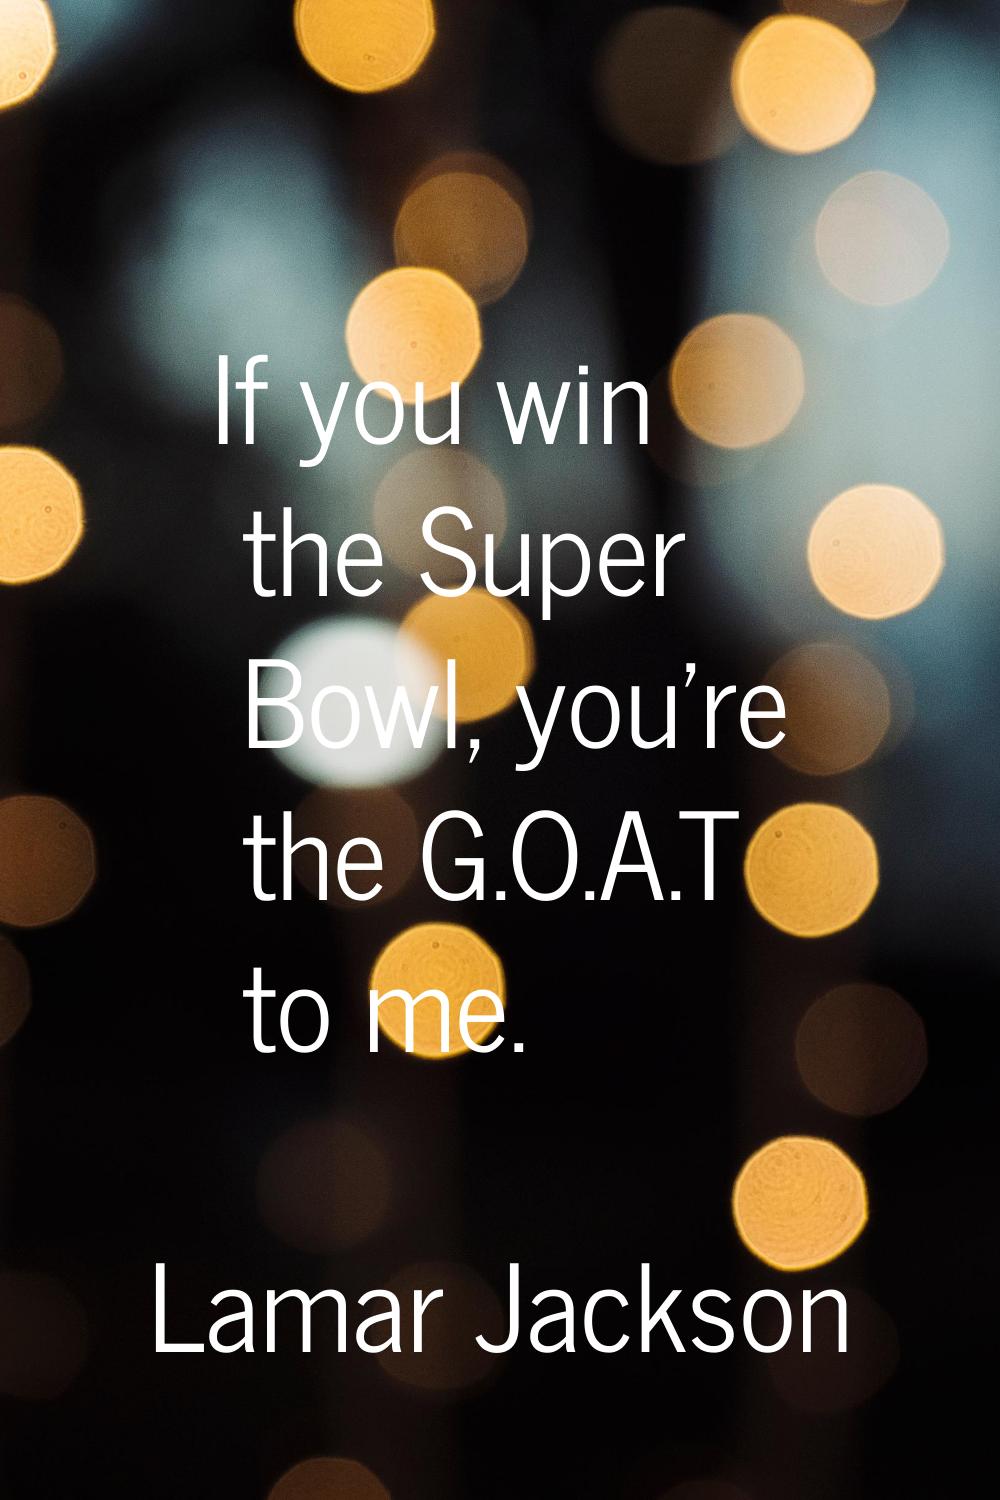 If you win the Super Bowl, you're the G.O.A.T to me.